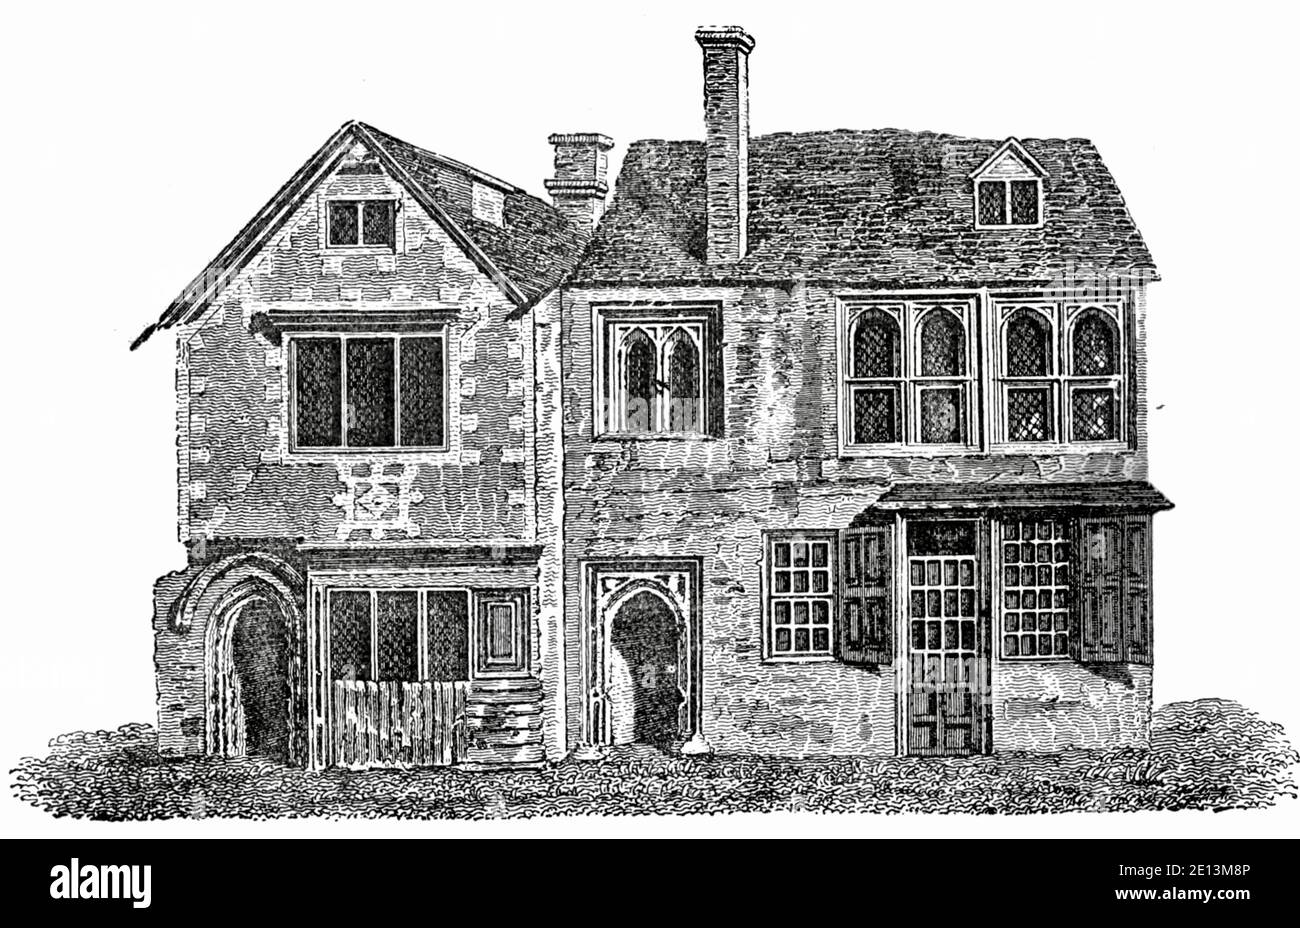 Impresión vintage de White Hall, Universidad de Oxford ahora demolida. Foto de stock